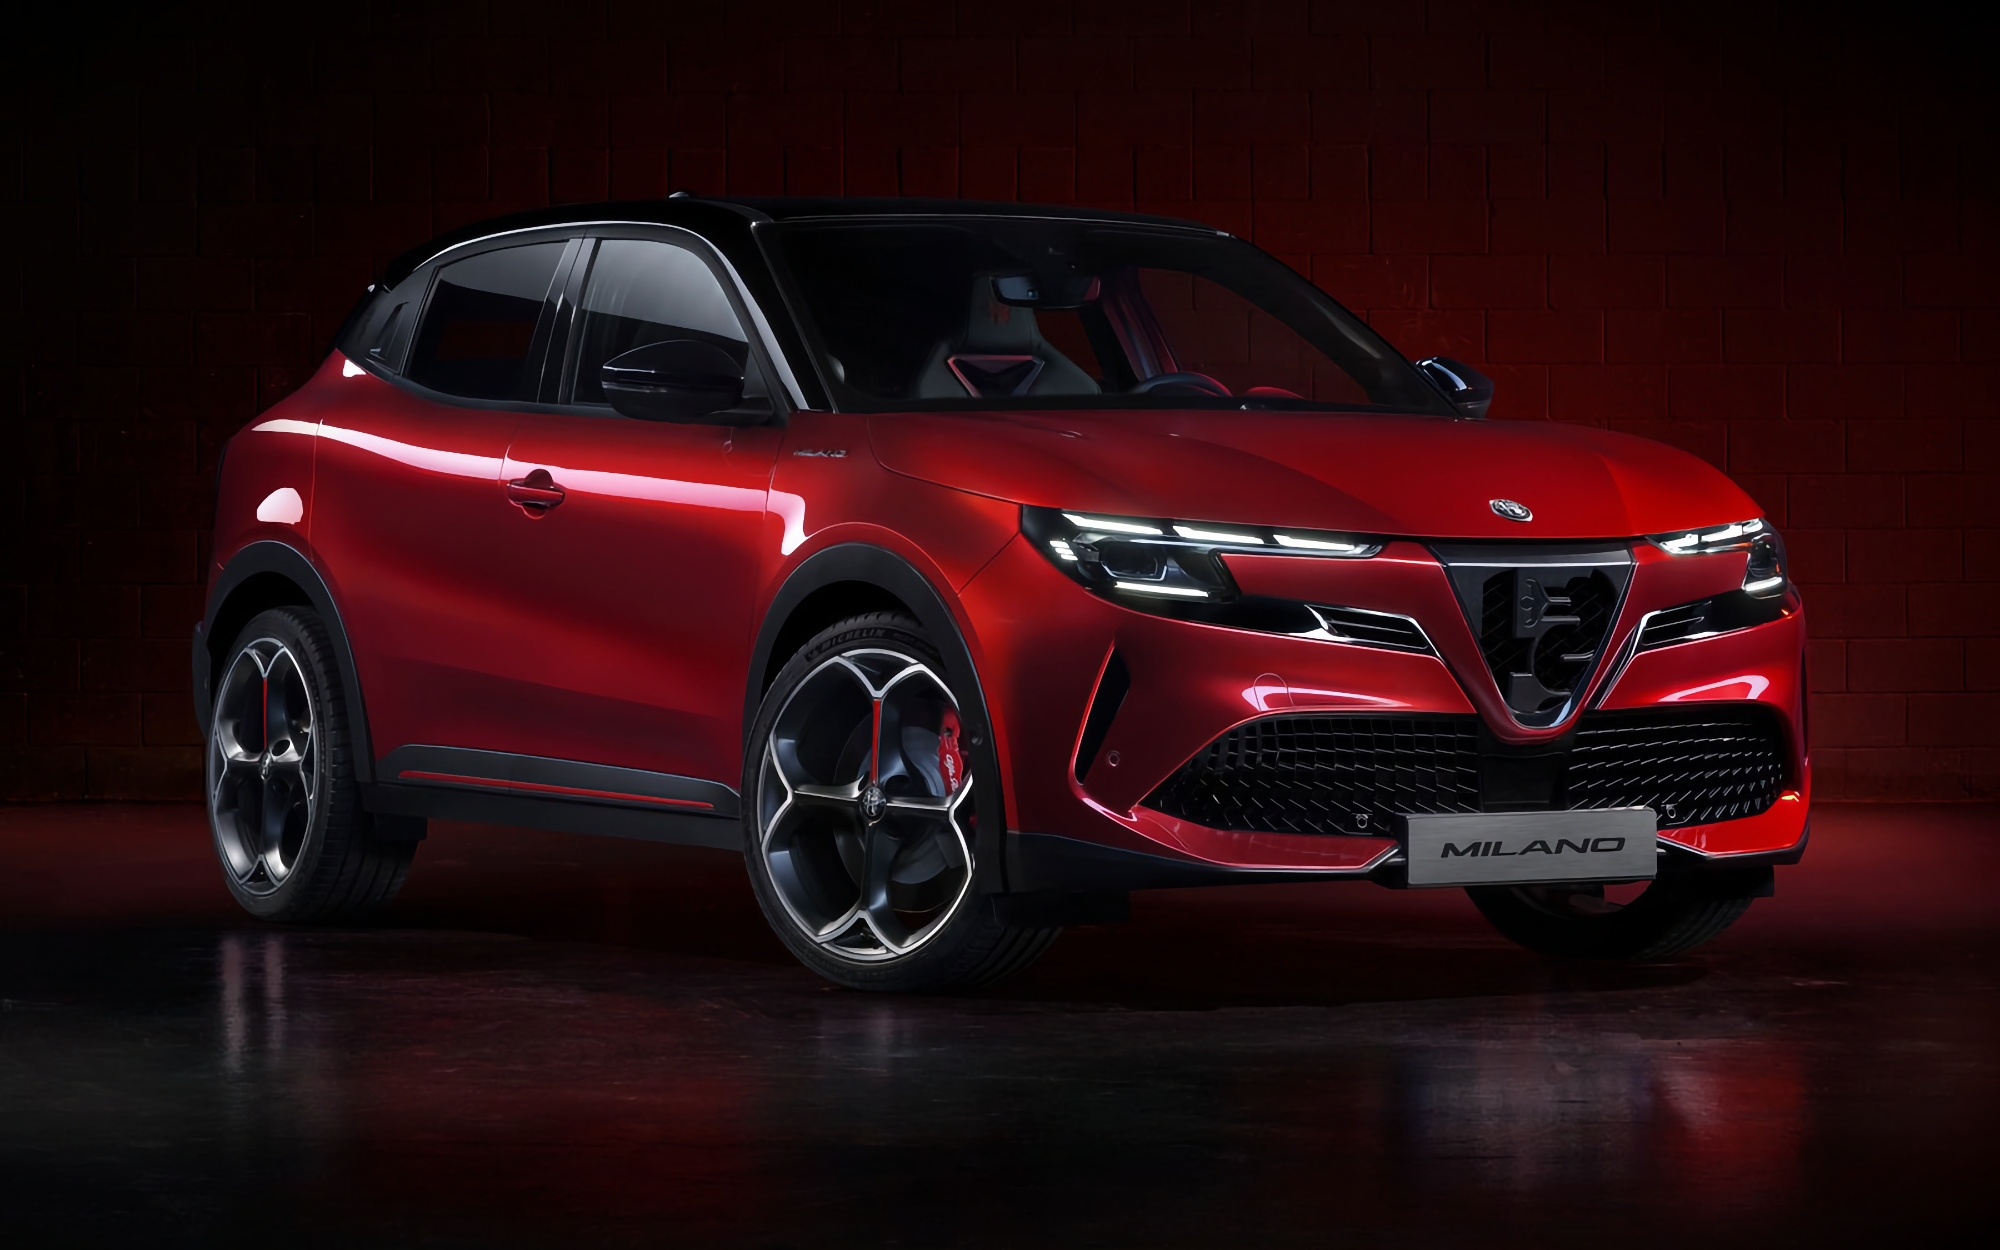 De eerste elektrische auto van het bedrijf: Alfa Romeo heeft de Milano onthuld met een actieradius tot 410 kilometer en een prijs vanaf 30.000 euro.